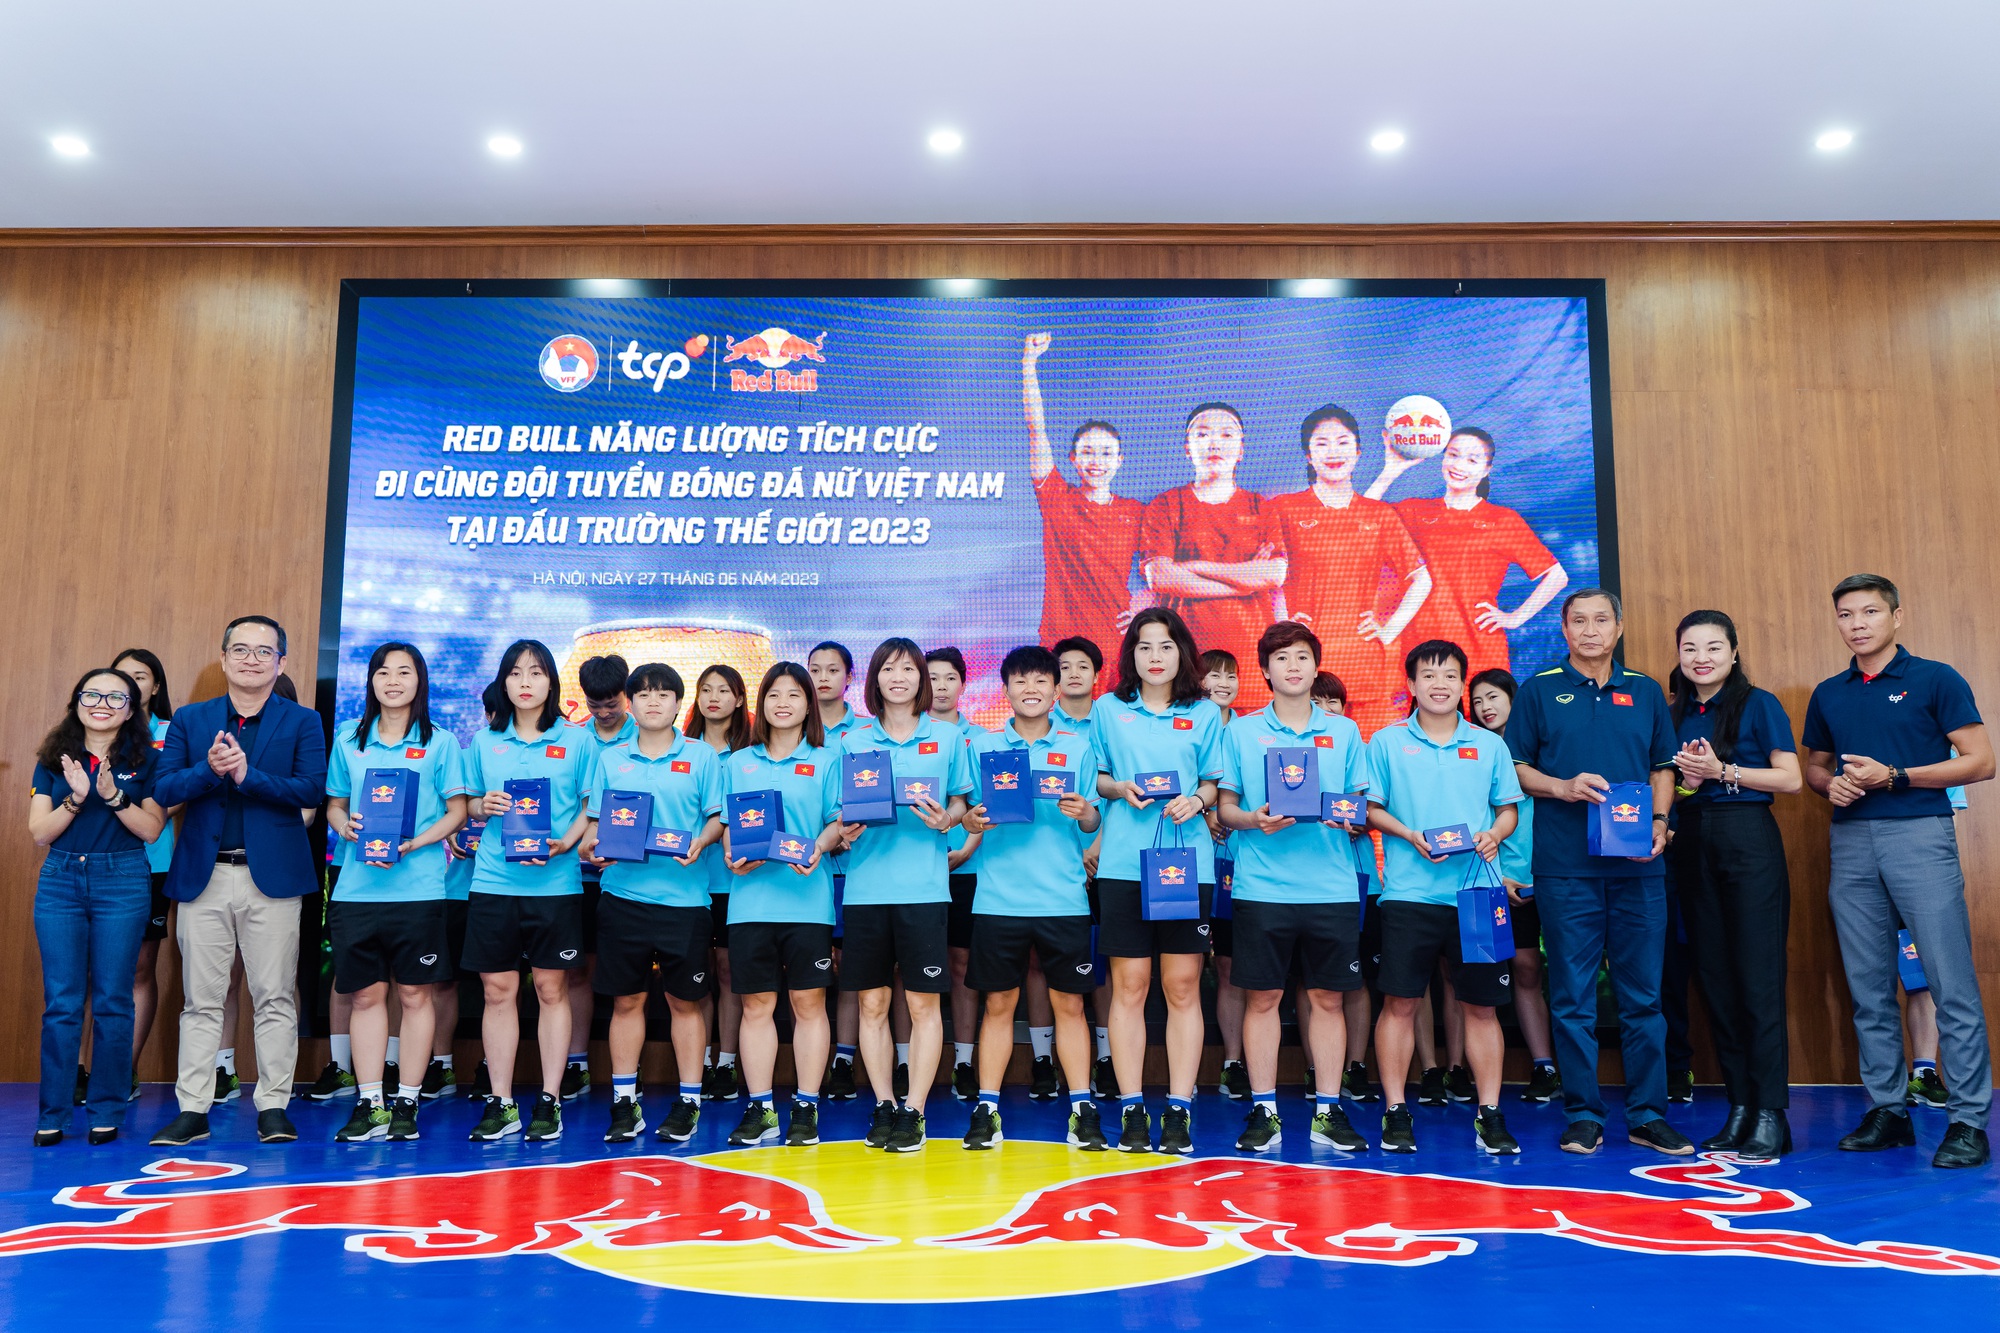 Xúc động khoảnh khắc tiễn đội tuyển nữ Việt Nam hướng đến World Cup 2023 - Ảnh 7.